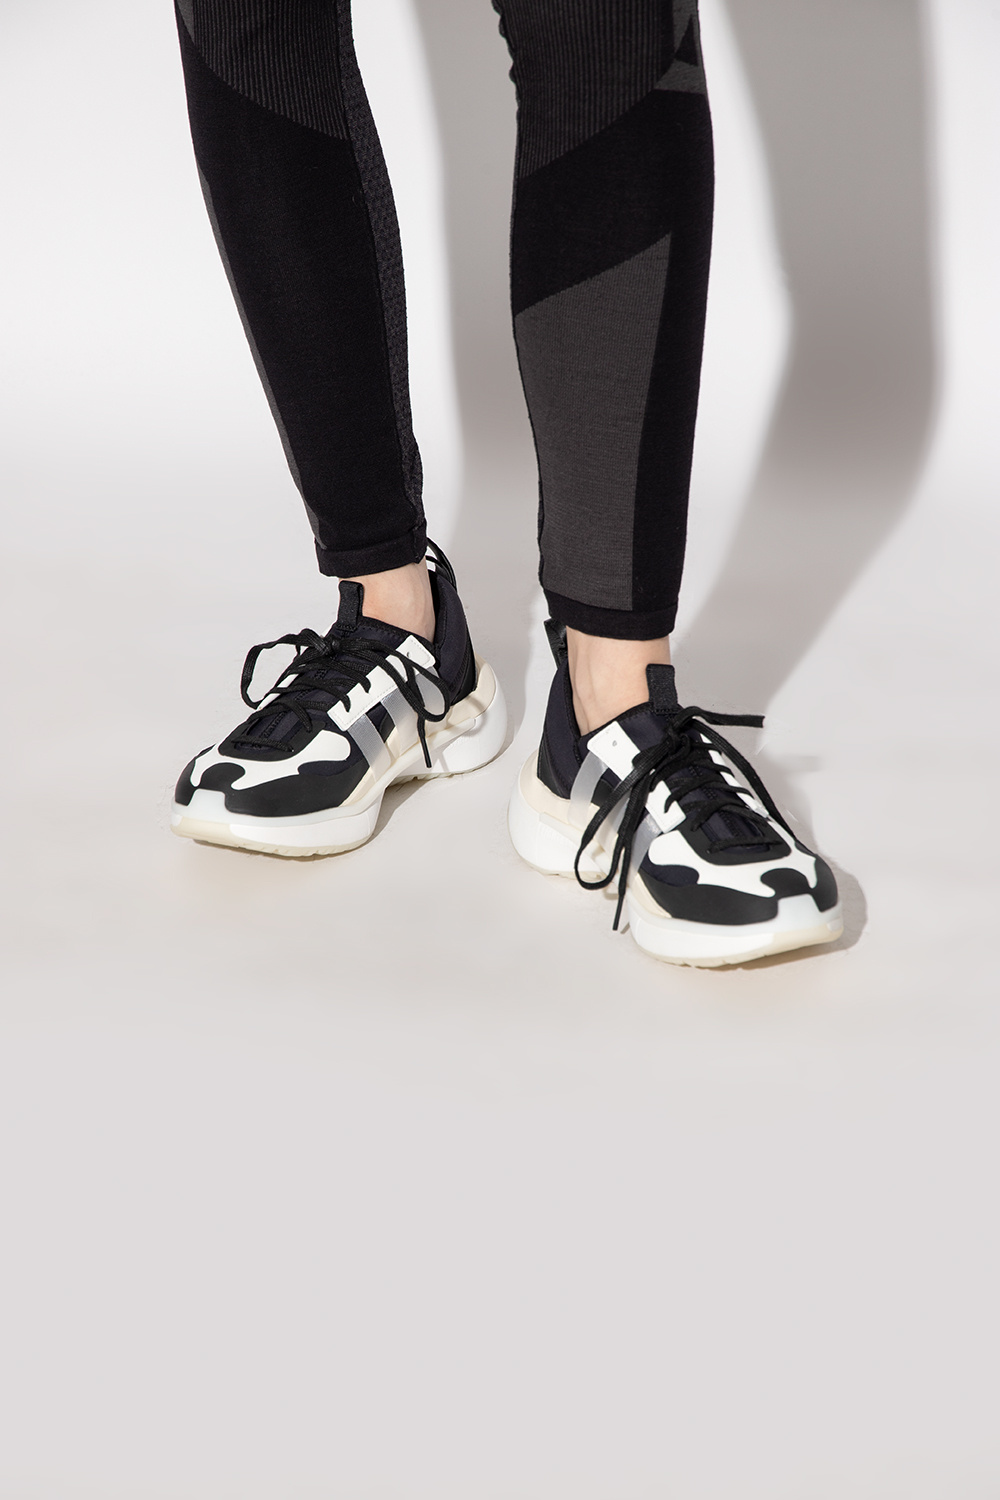 Y-3 Yohji Yamamoto 'Qisan Cozy II' sneakers | Women's Shoes | Vitkac